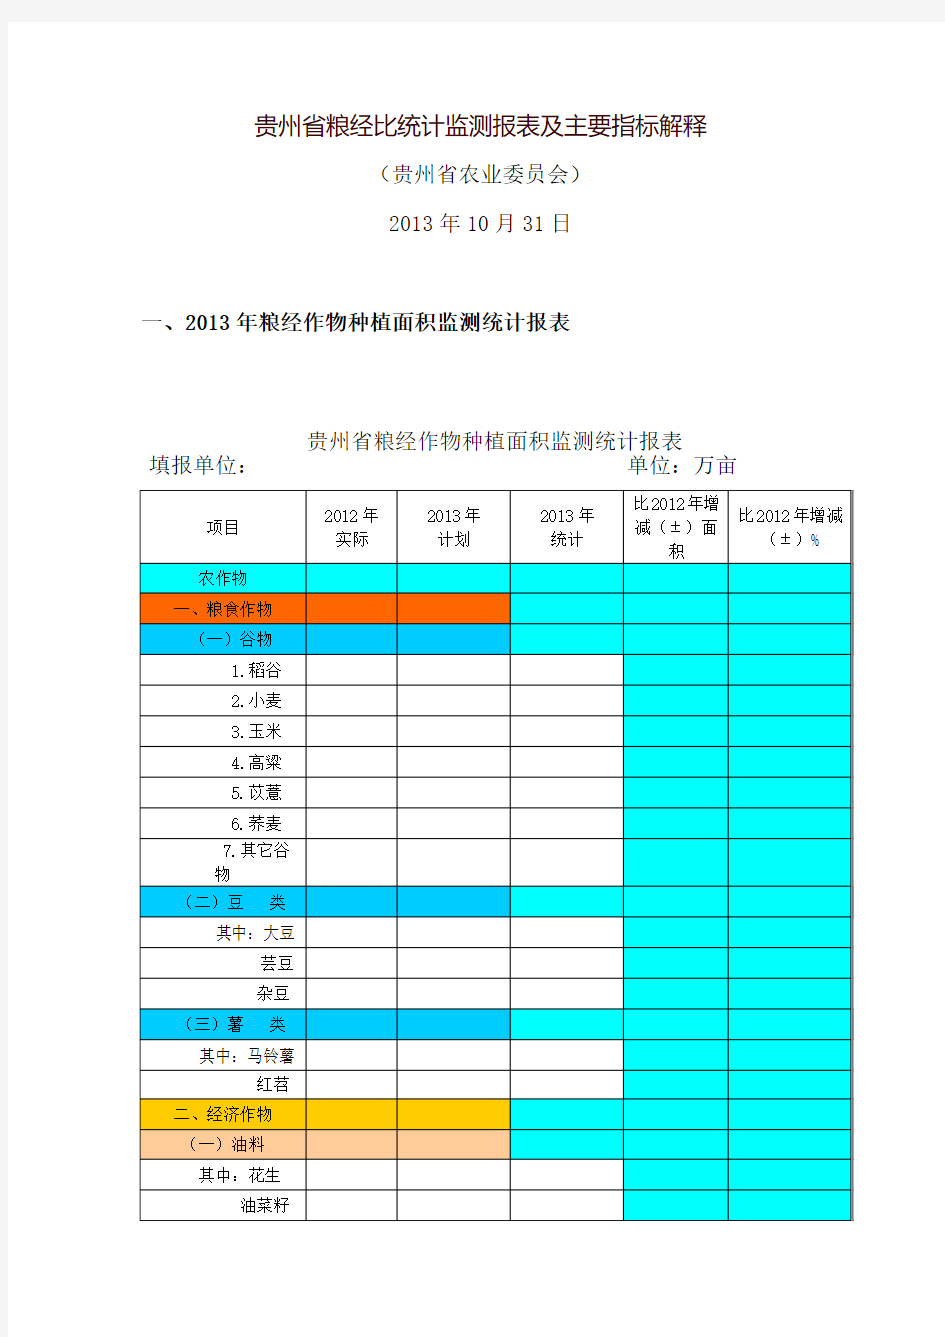 贵州省粮经比统计监测报表及主要指标解释